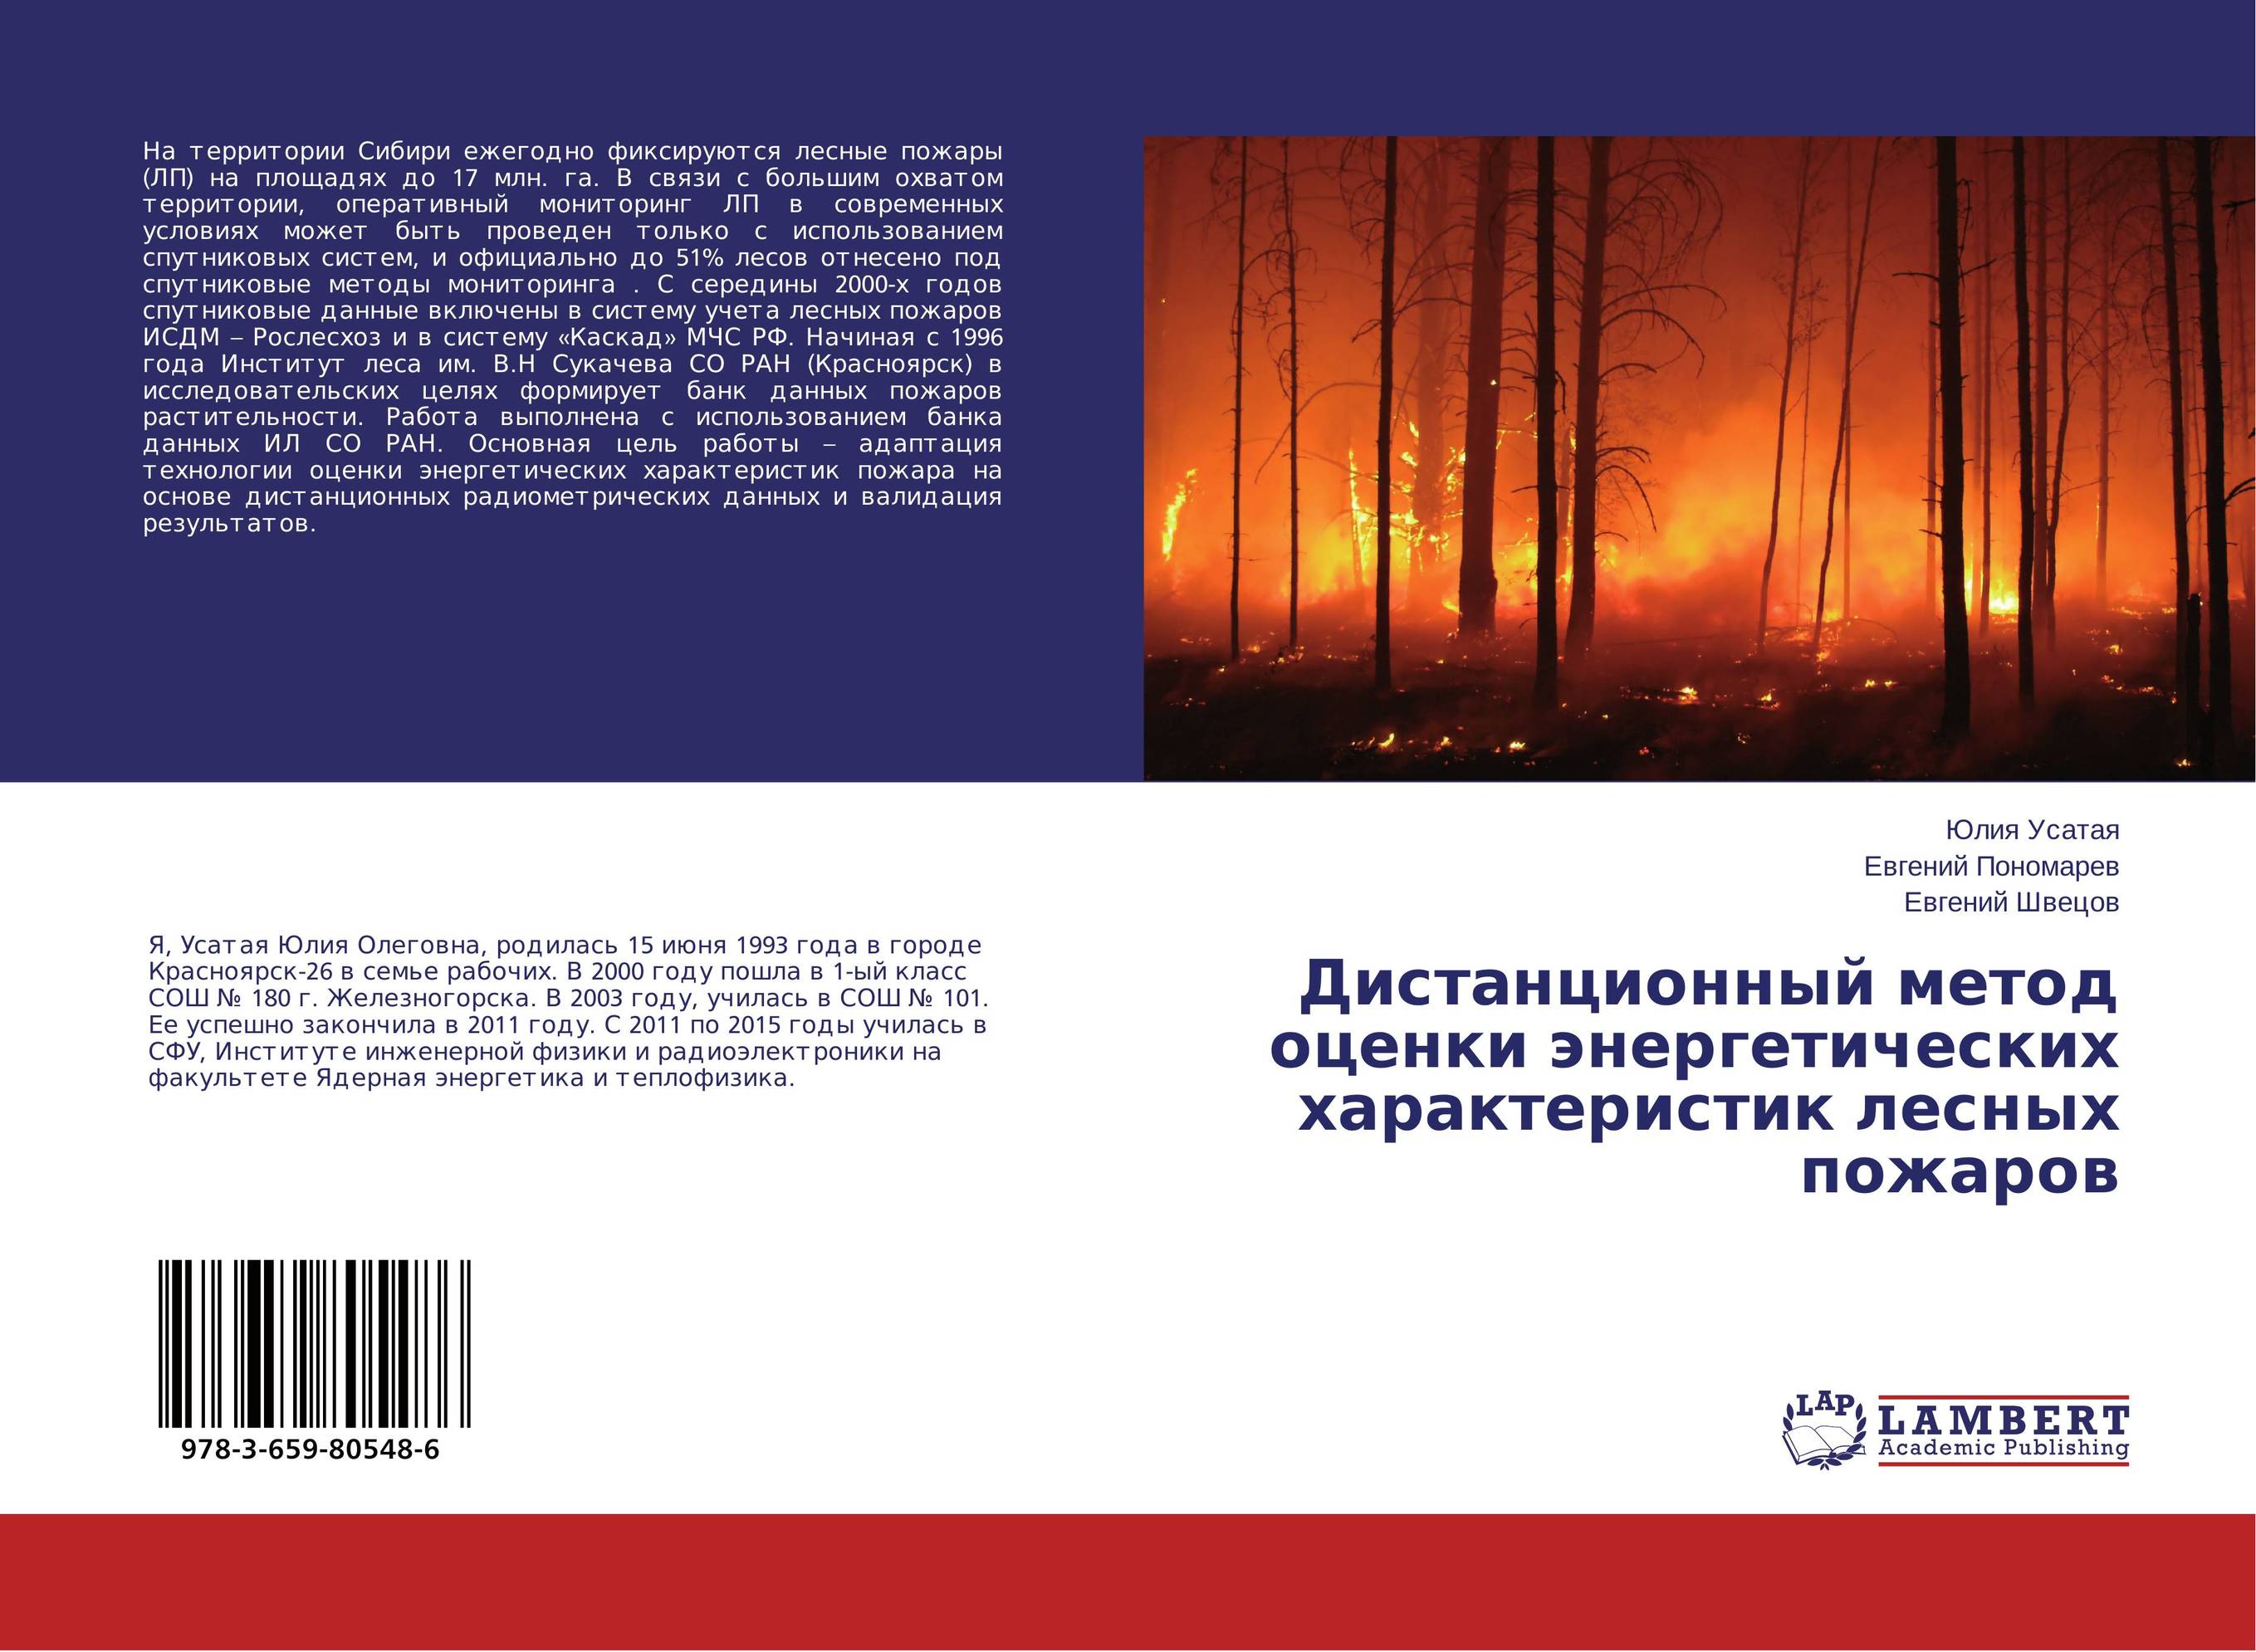 
        Дистанционный метод оценки энергетических характеристик лесных пожаров..
      